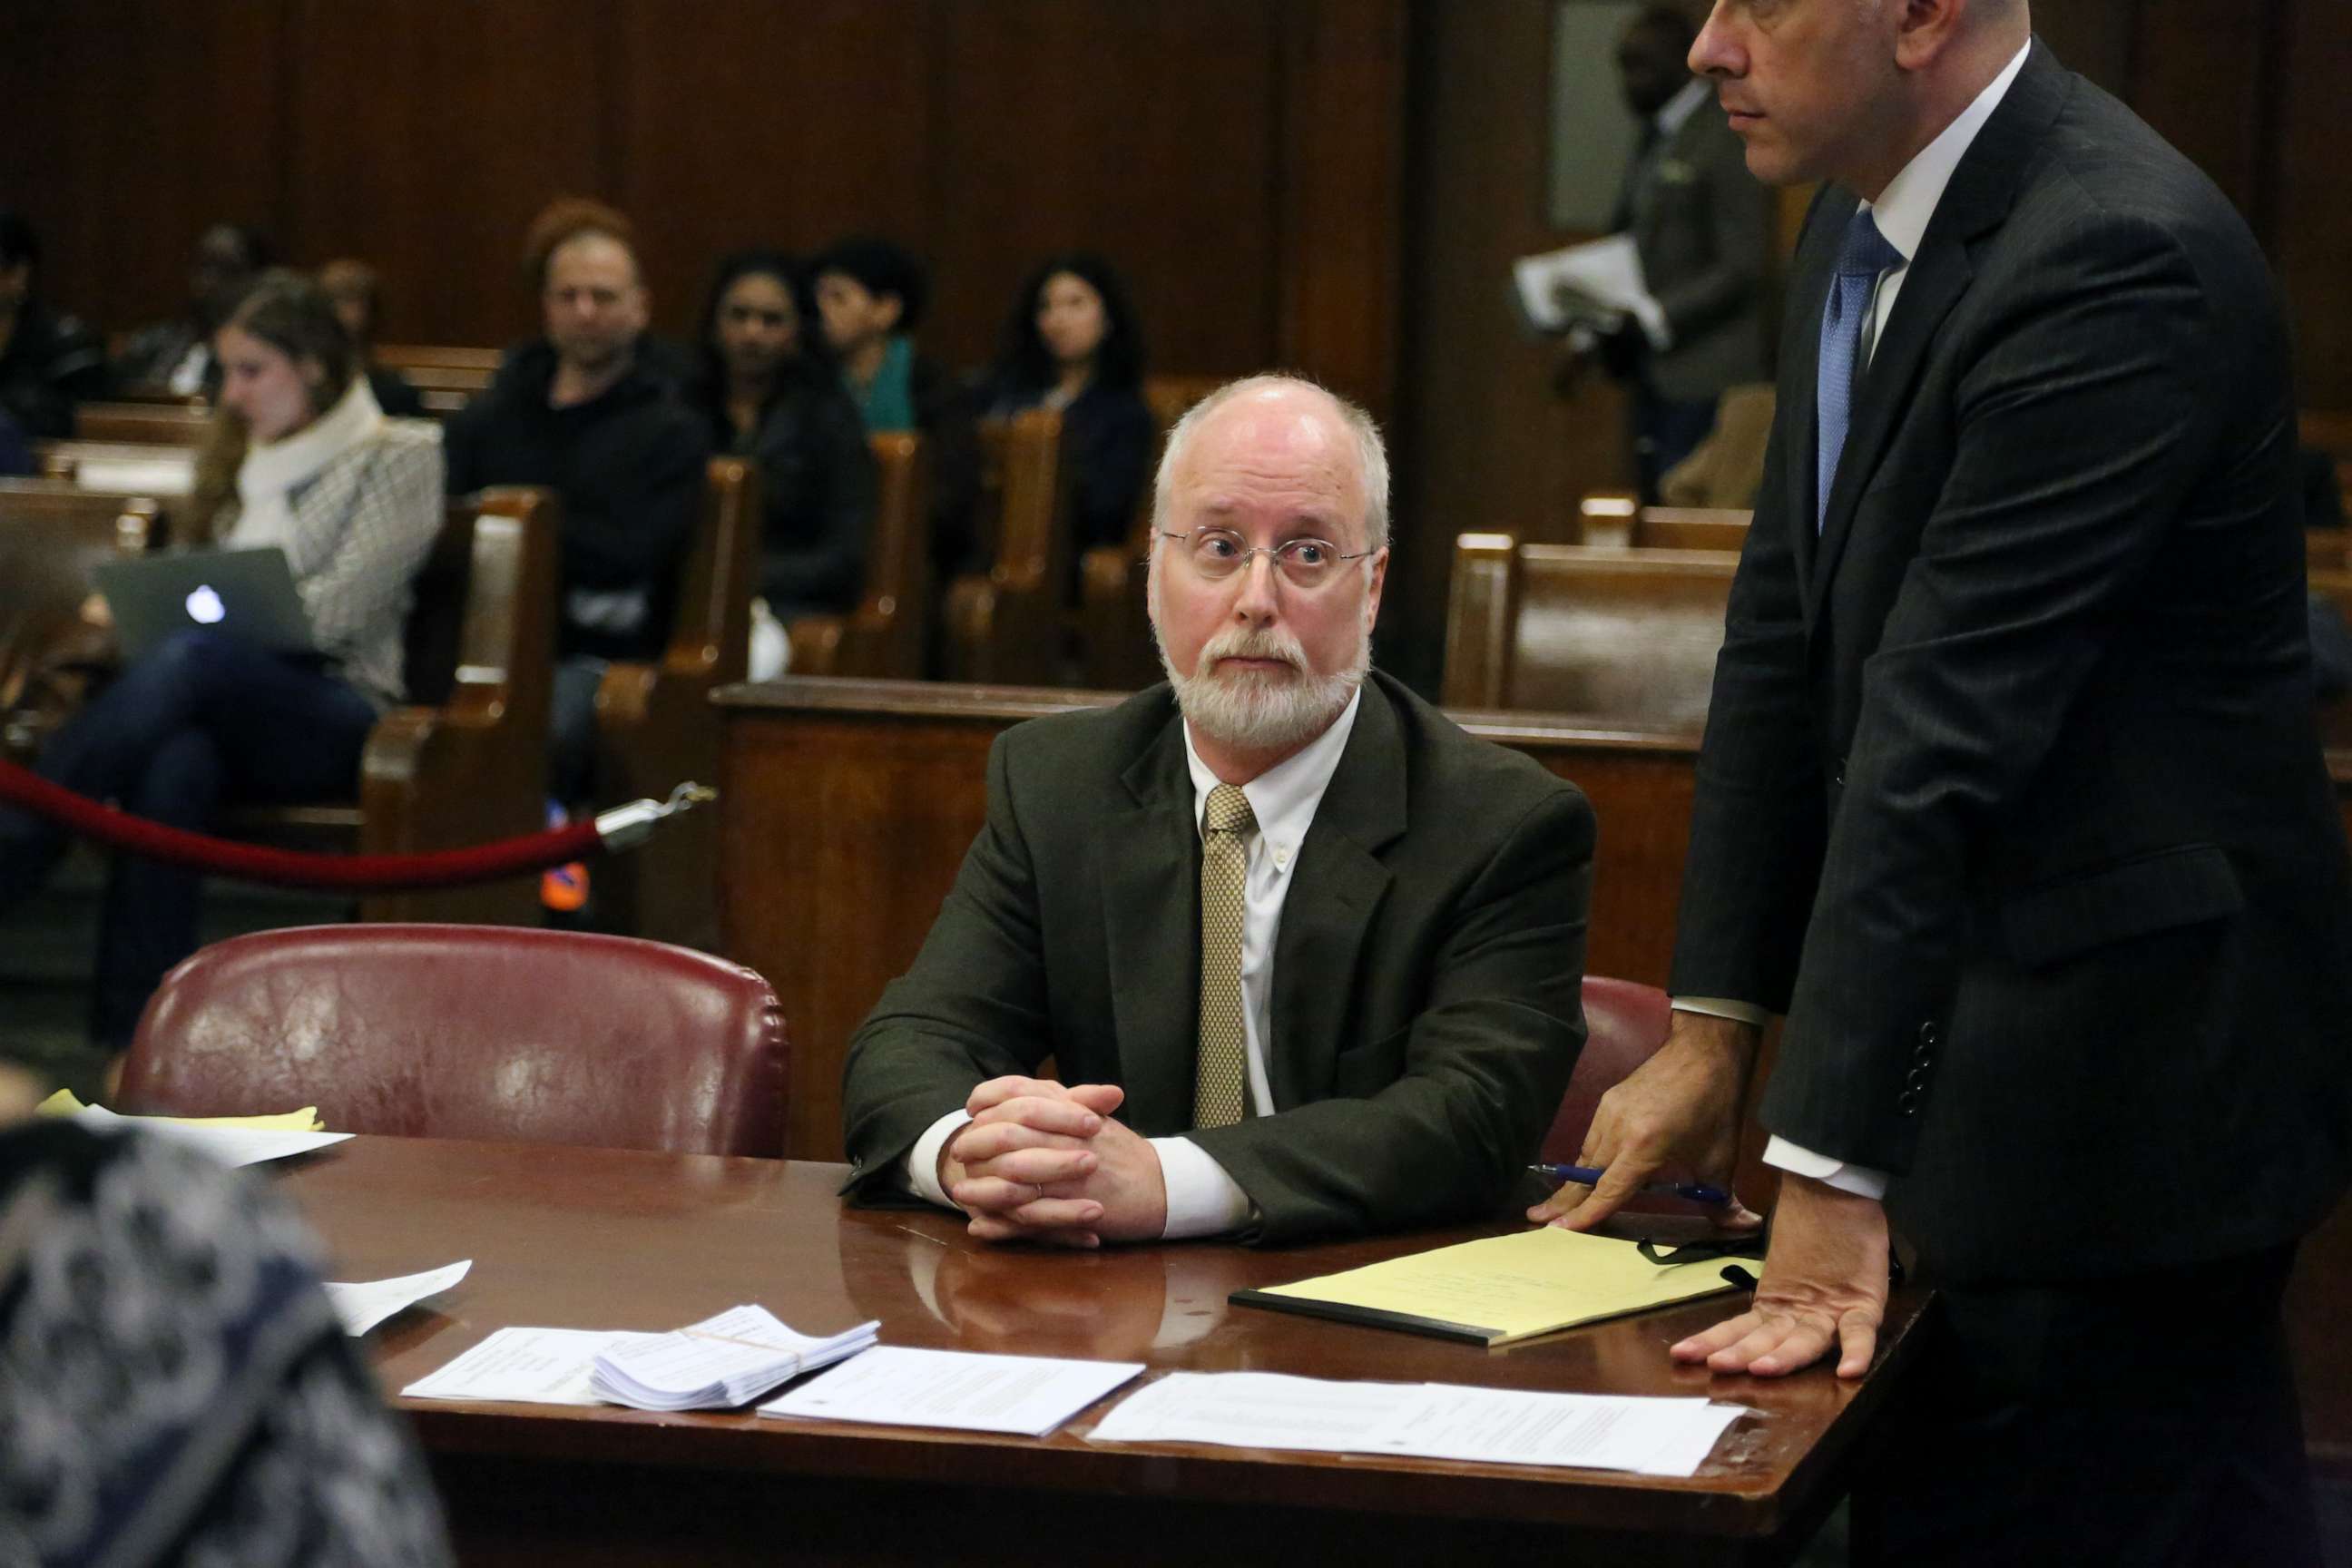 PHOTO: Dr. Robert Hadden apears in Manhattan Supreme Court on Nov. 6, 2014.